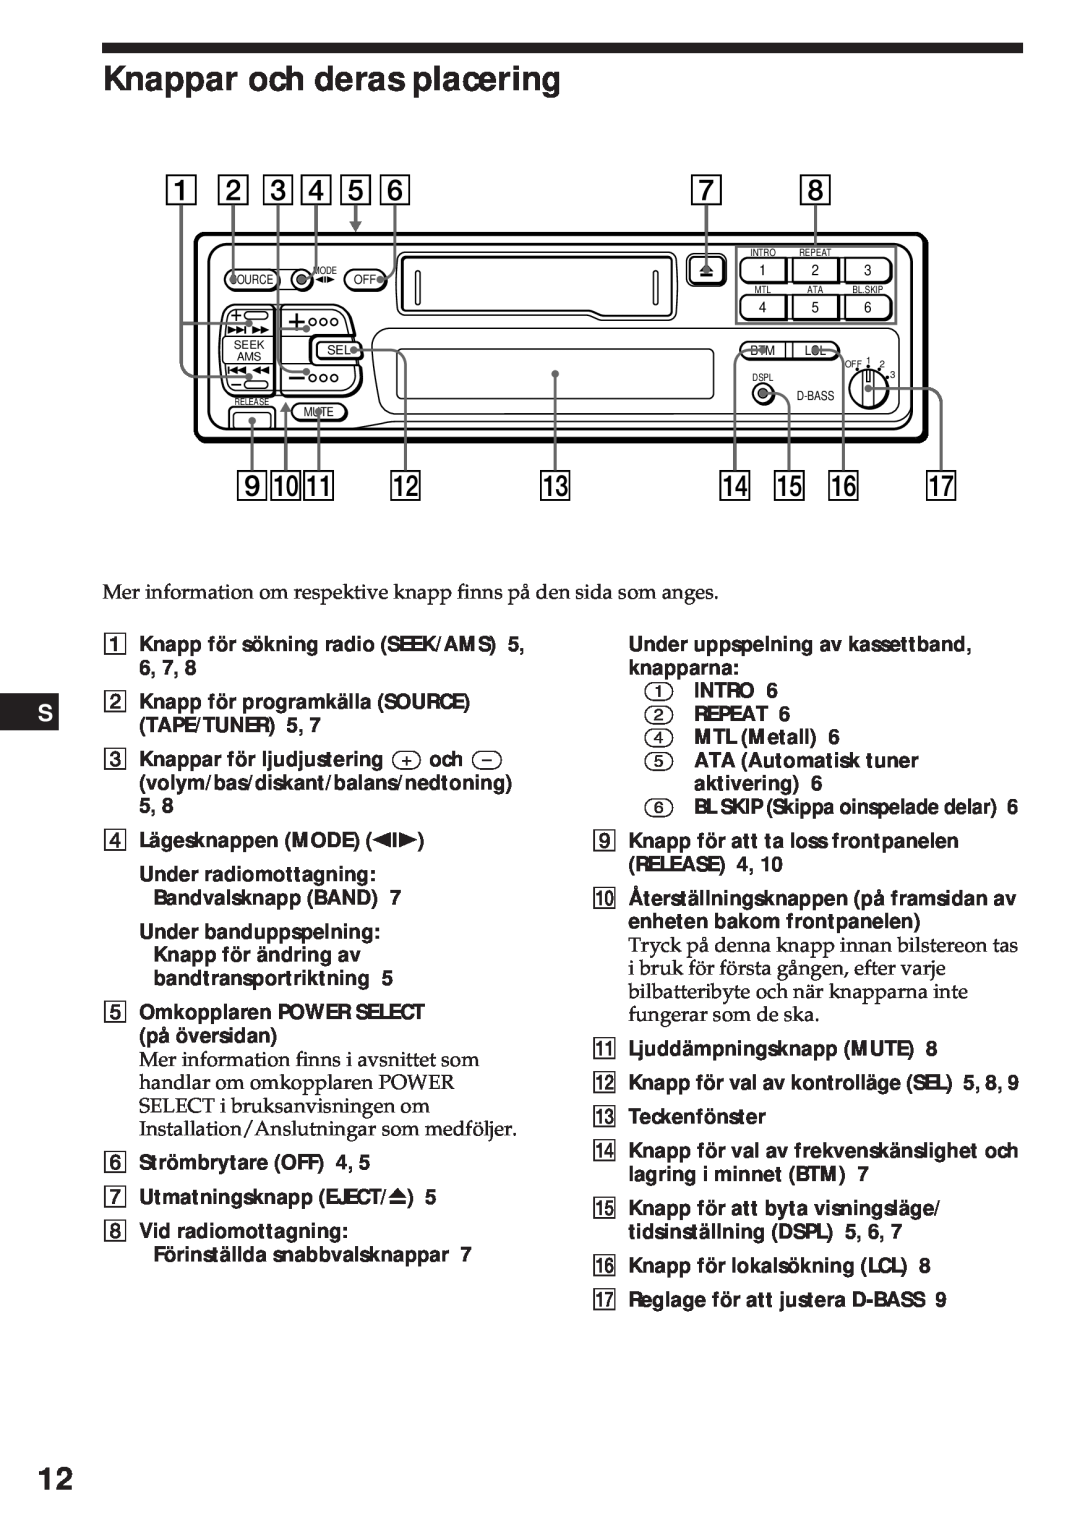 Sony XR-3750 Knappar och deras placering, Knapp för sökning radio SEEK/AMS 5, 6, 7, Knappar för ljudjustering + och Ð 